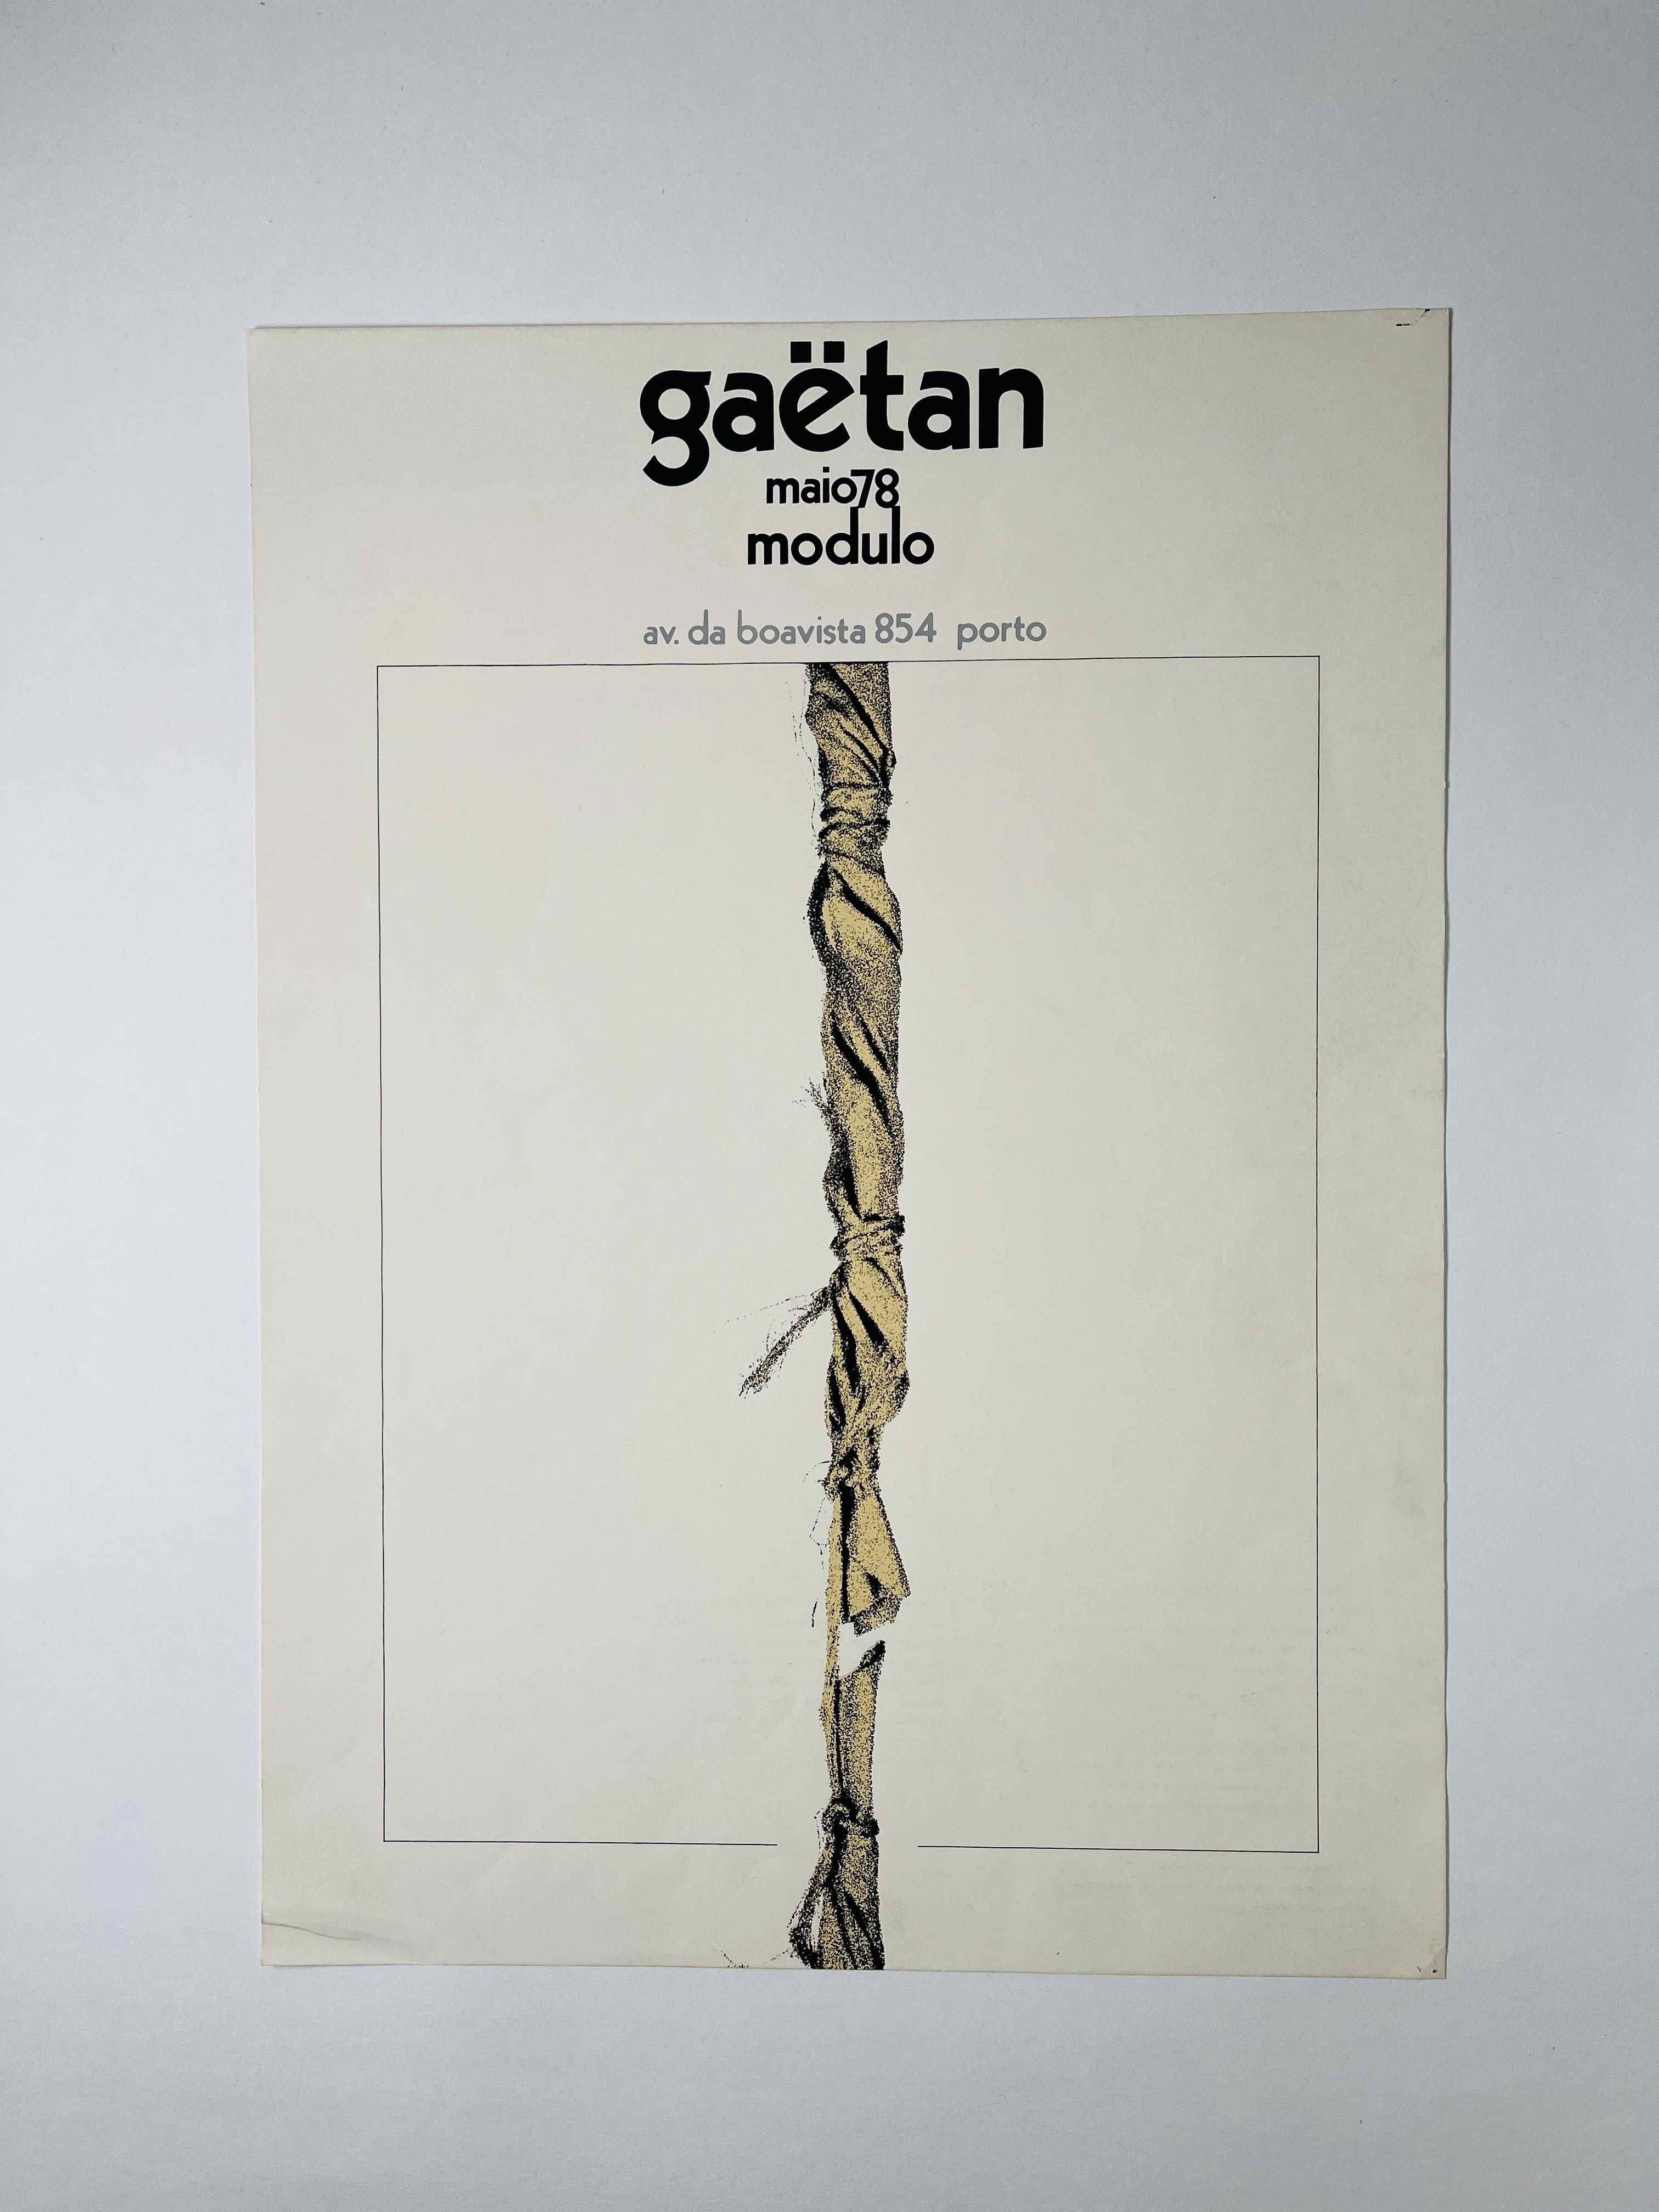 Cartaz de Exposição Gäetan Galeria Modulo Porto 1978